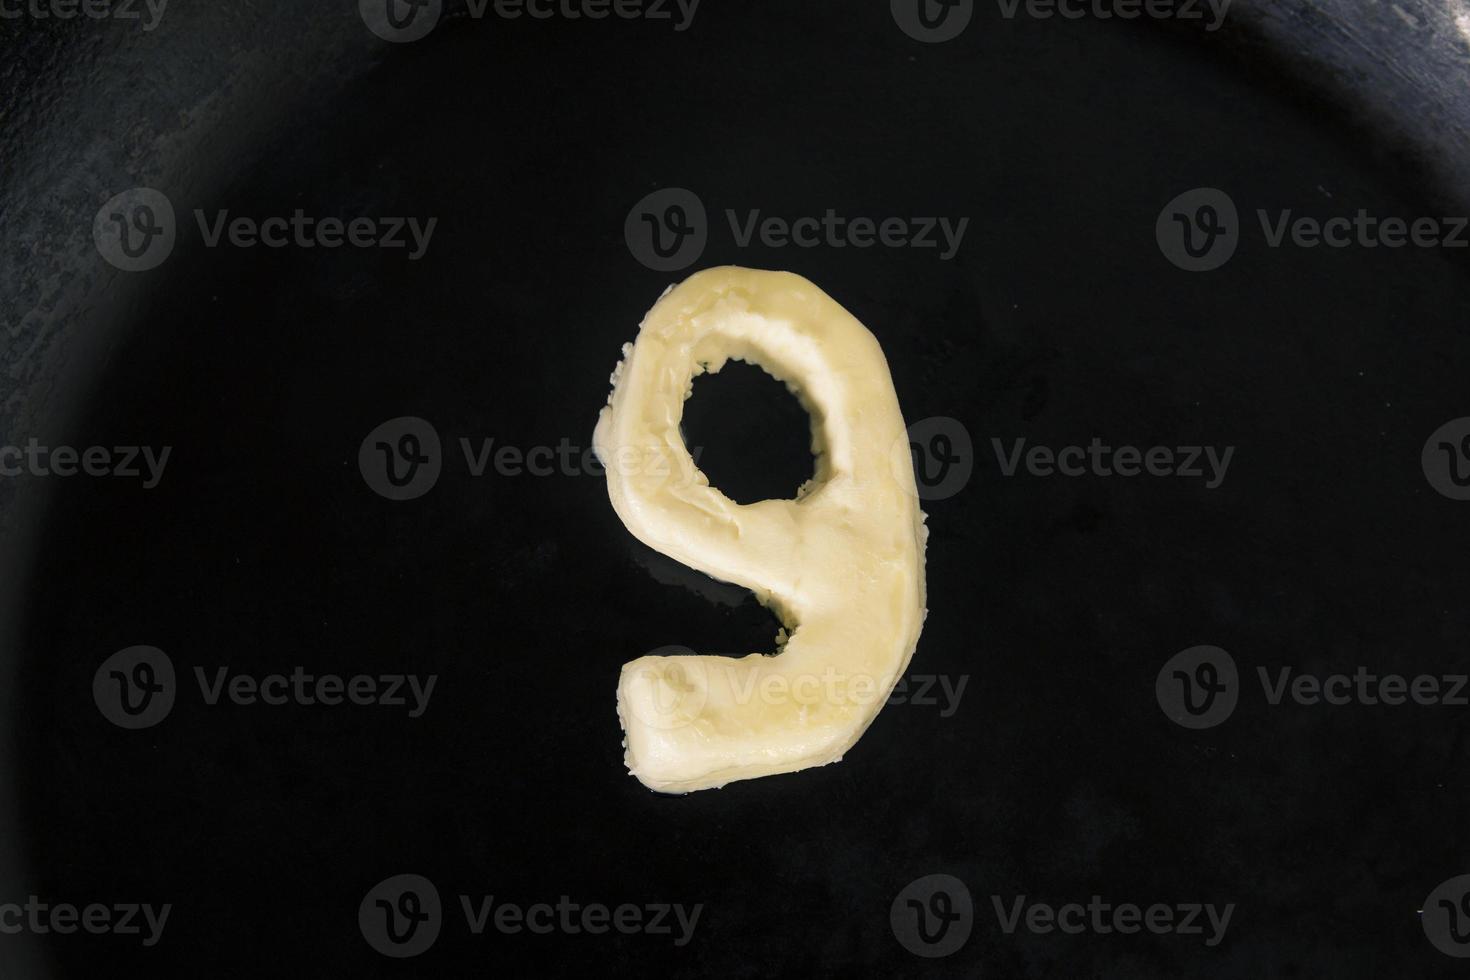 beurre en forme de numéro 9 sur une poêle chaude - vue de dessus en gros plan photo